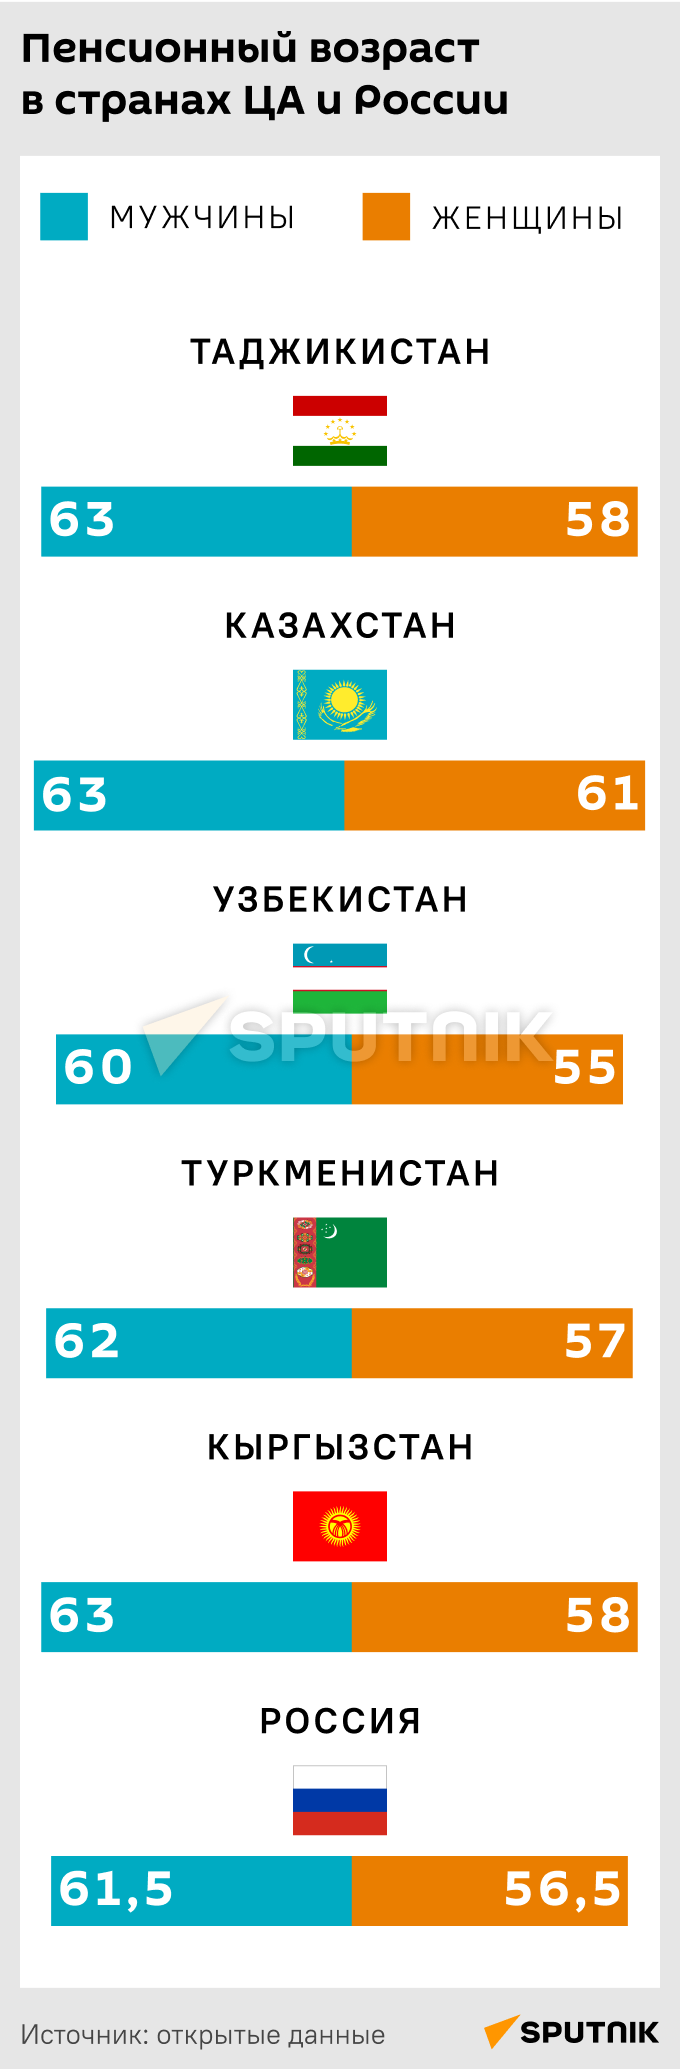 Пенсионный возраст в странах ЦА и России - Sputnik Таджикистан